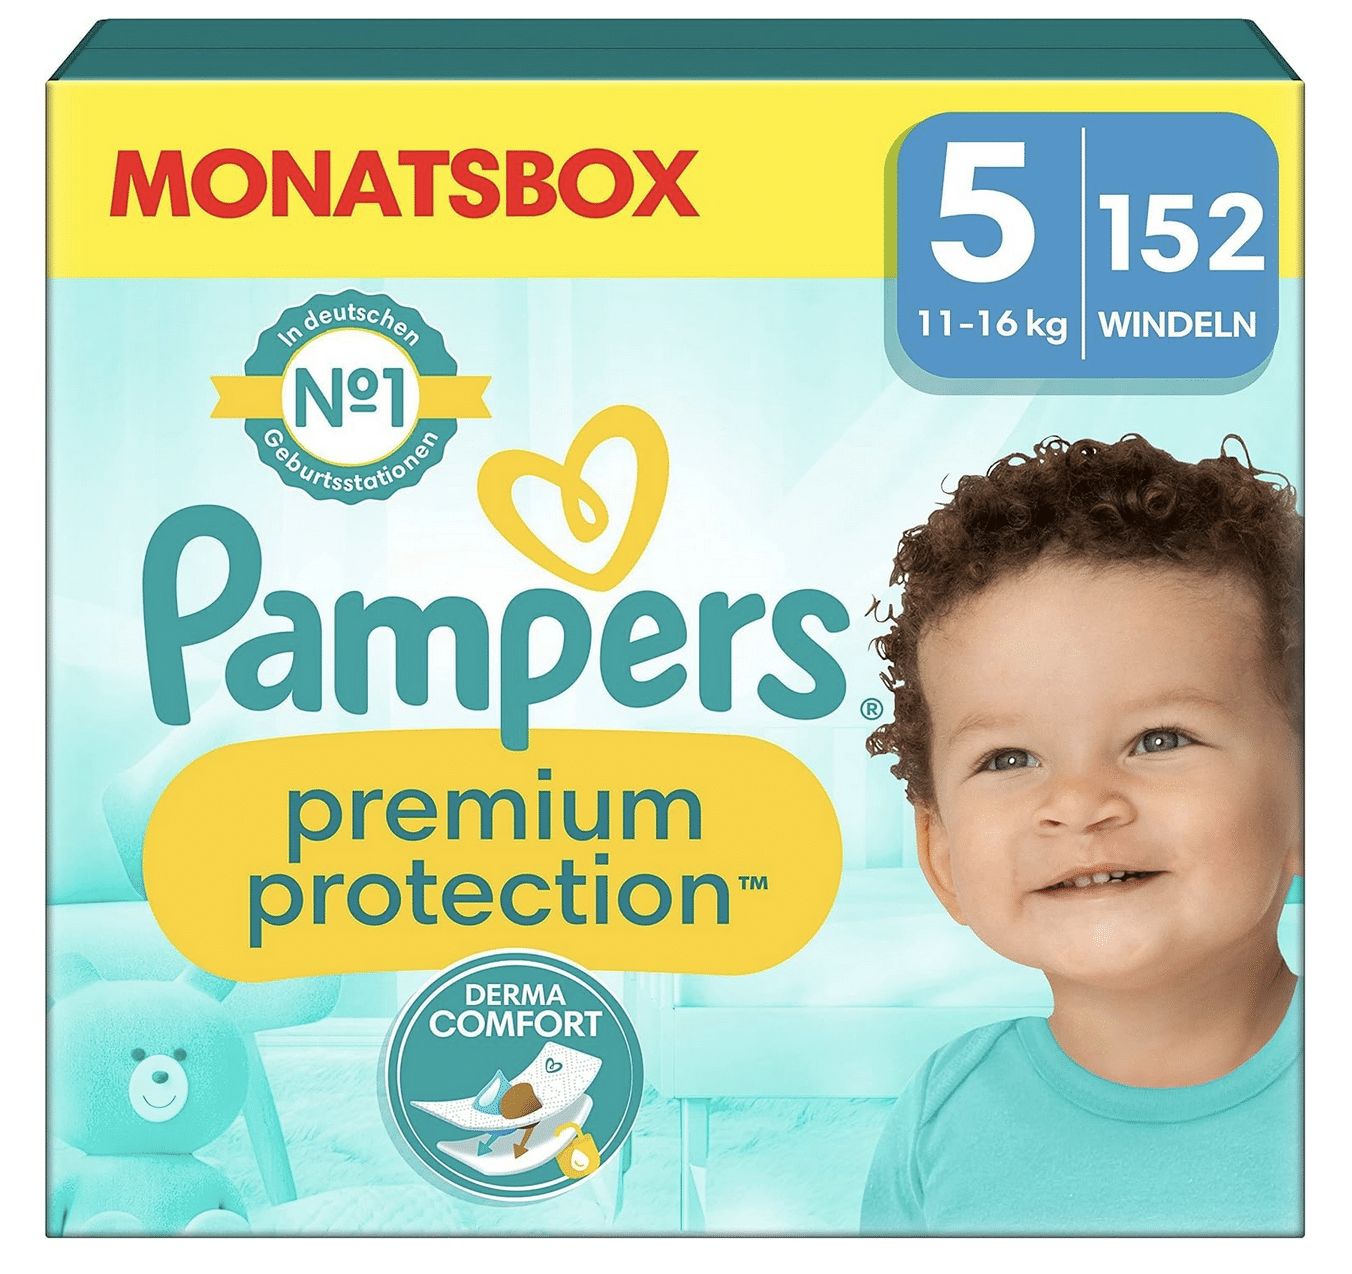 Pampers Premium Protection Windeln/ Pants in der Monatsbox in allen Größen z.B: 5er Windel für 26 Cent